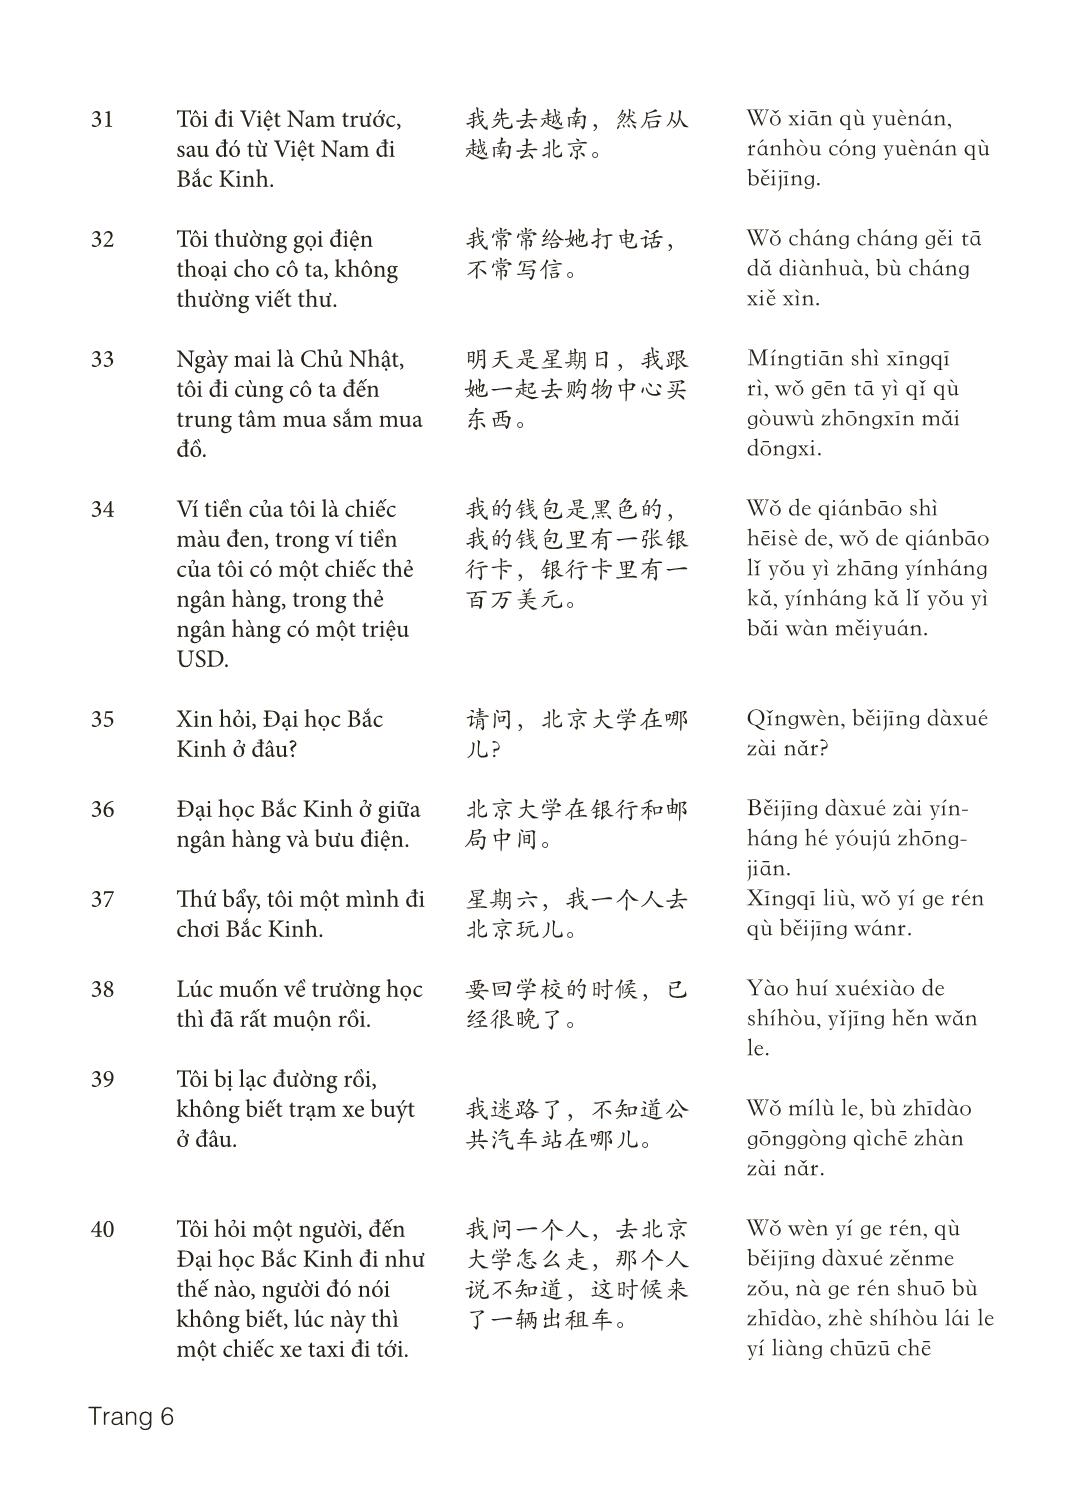 3000 Câu đàm thoại tiếng Hoa - Phần 7 trang 6